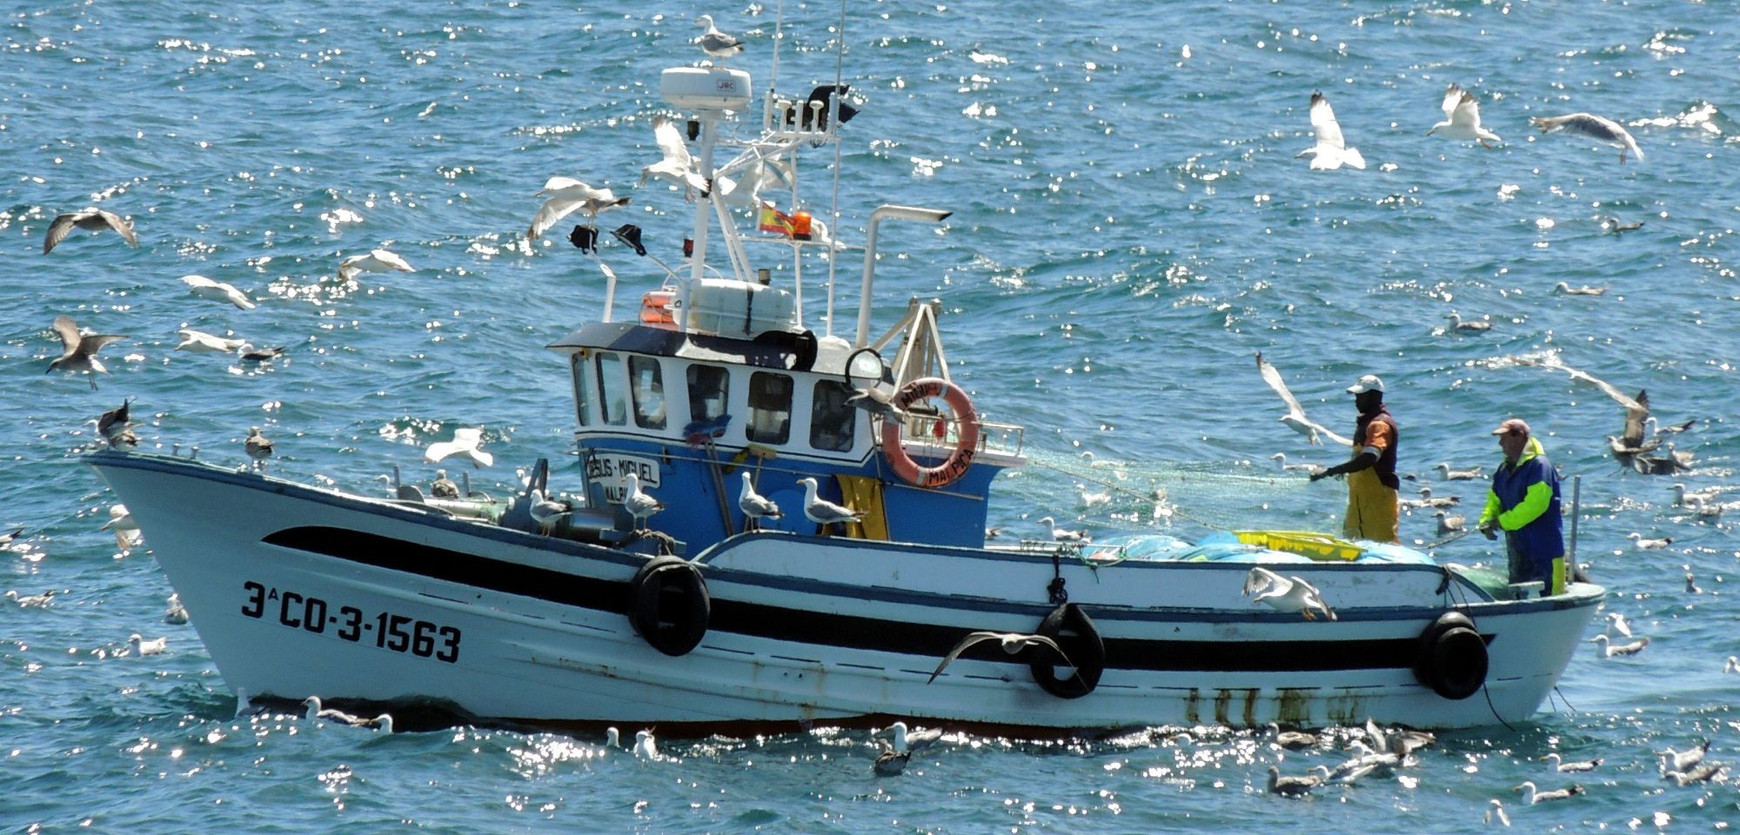 Quelle place pour la pêche artisanale en Europe ? - Enjeux liés à la gestion de la pêche européenne, épisode 2- L'Europe vue d'ici #8